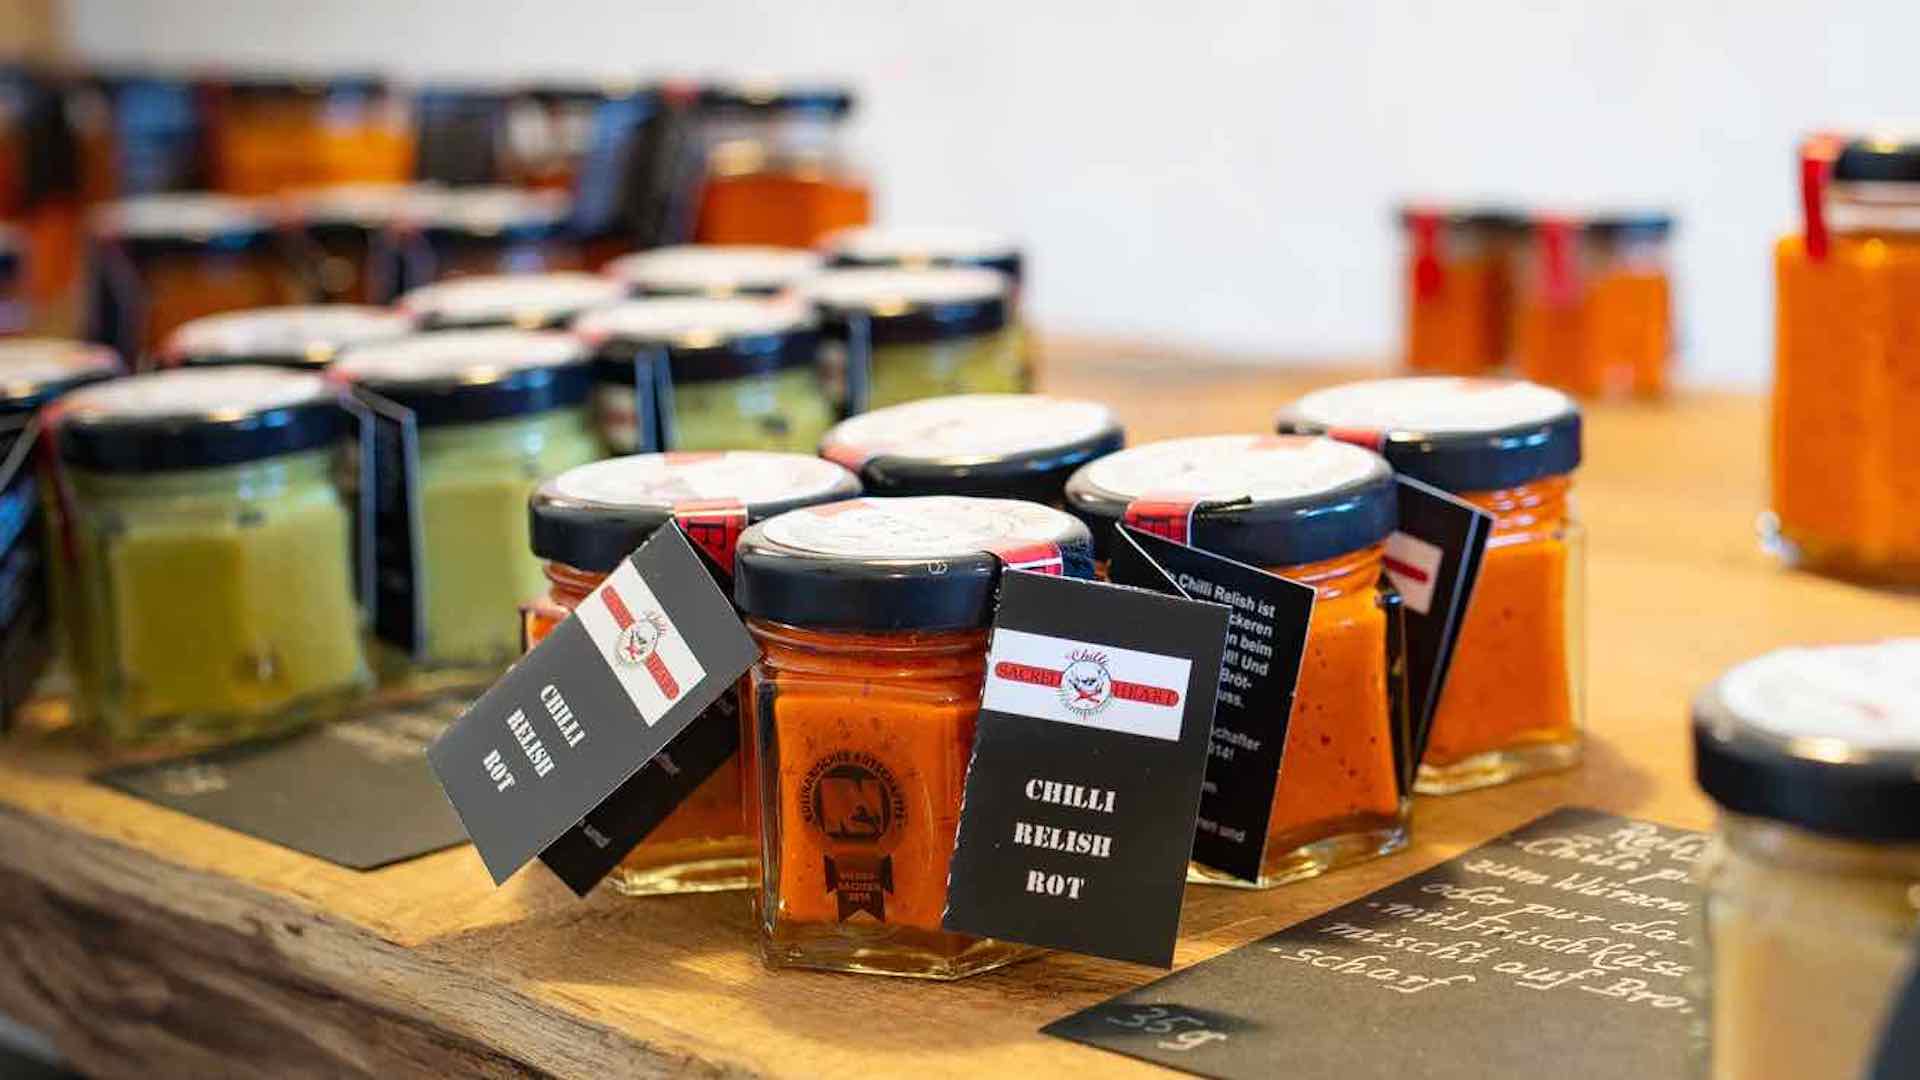 Chili Produkte der Chilli Manufaktur auf einem Tisch